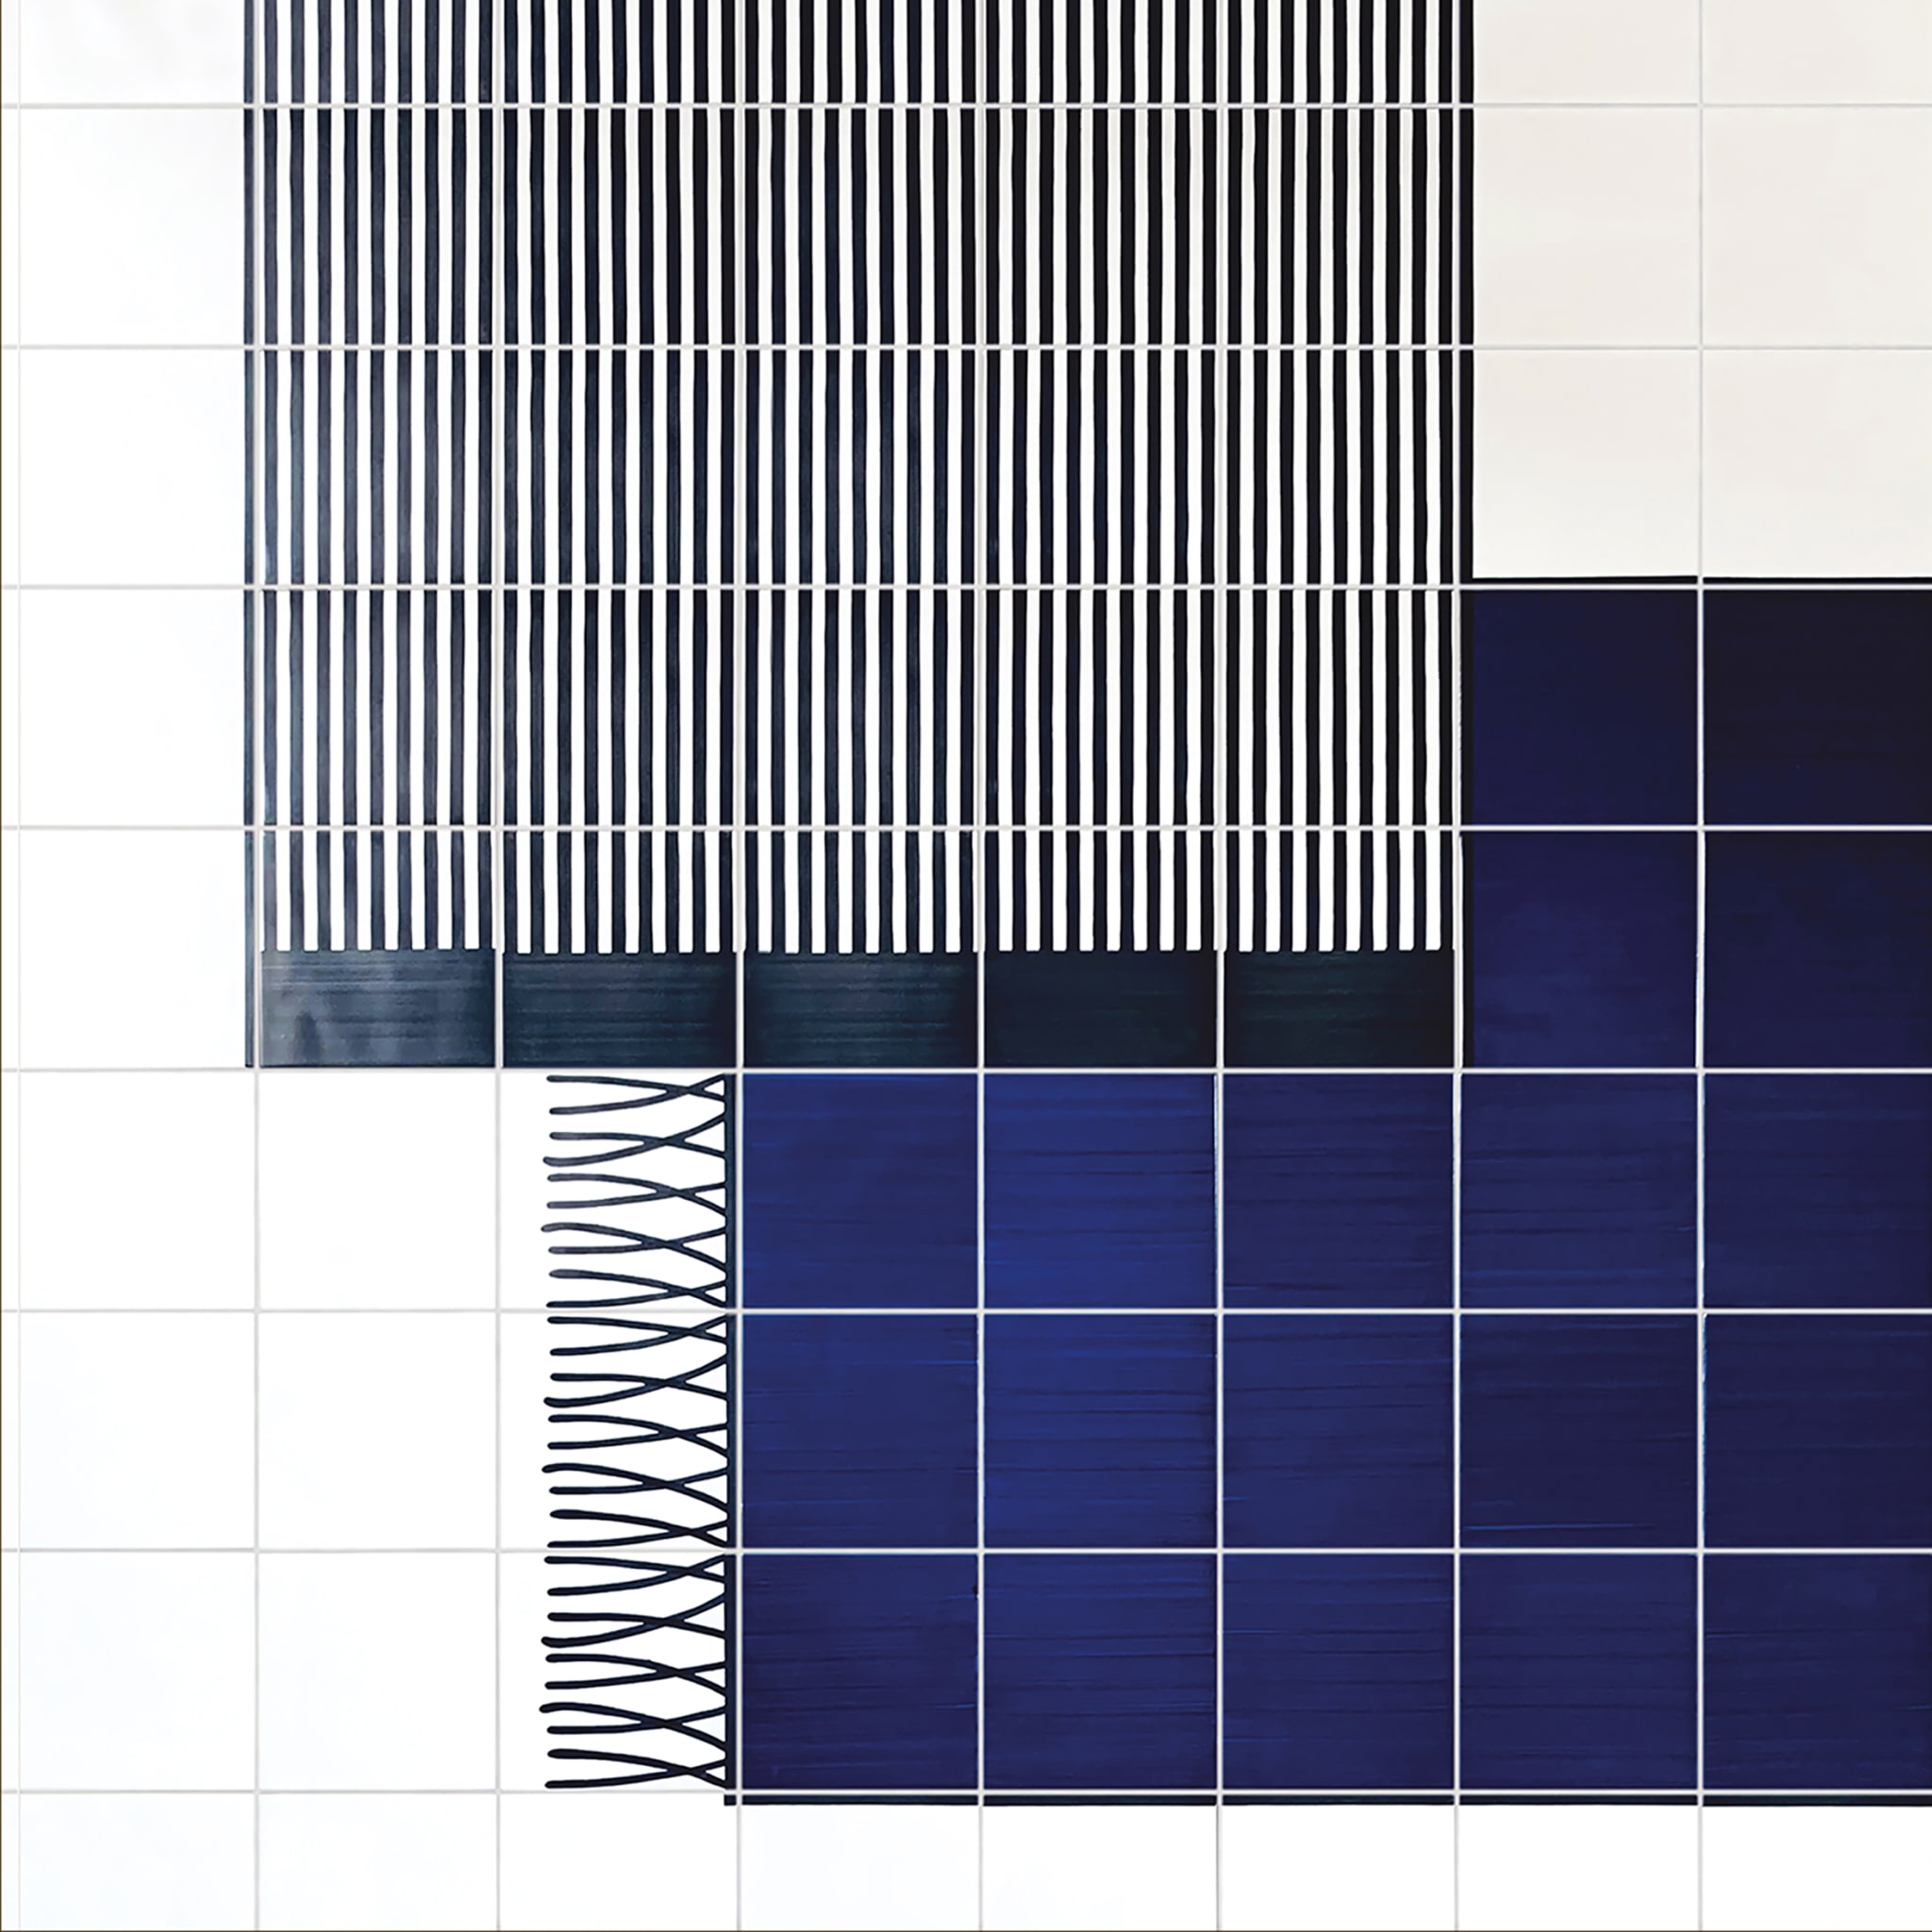 Carpet Total Blue Ceramic Composition by Giuliano Andrea dell’Uva 200 x 100 - Alternative view 2